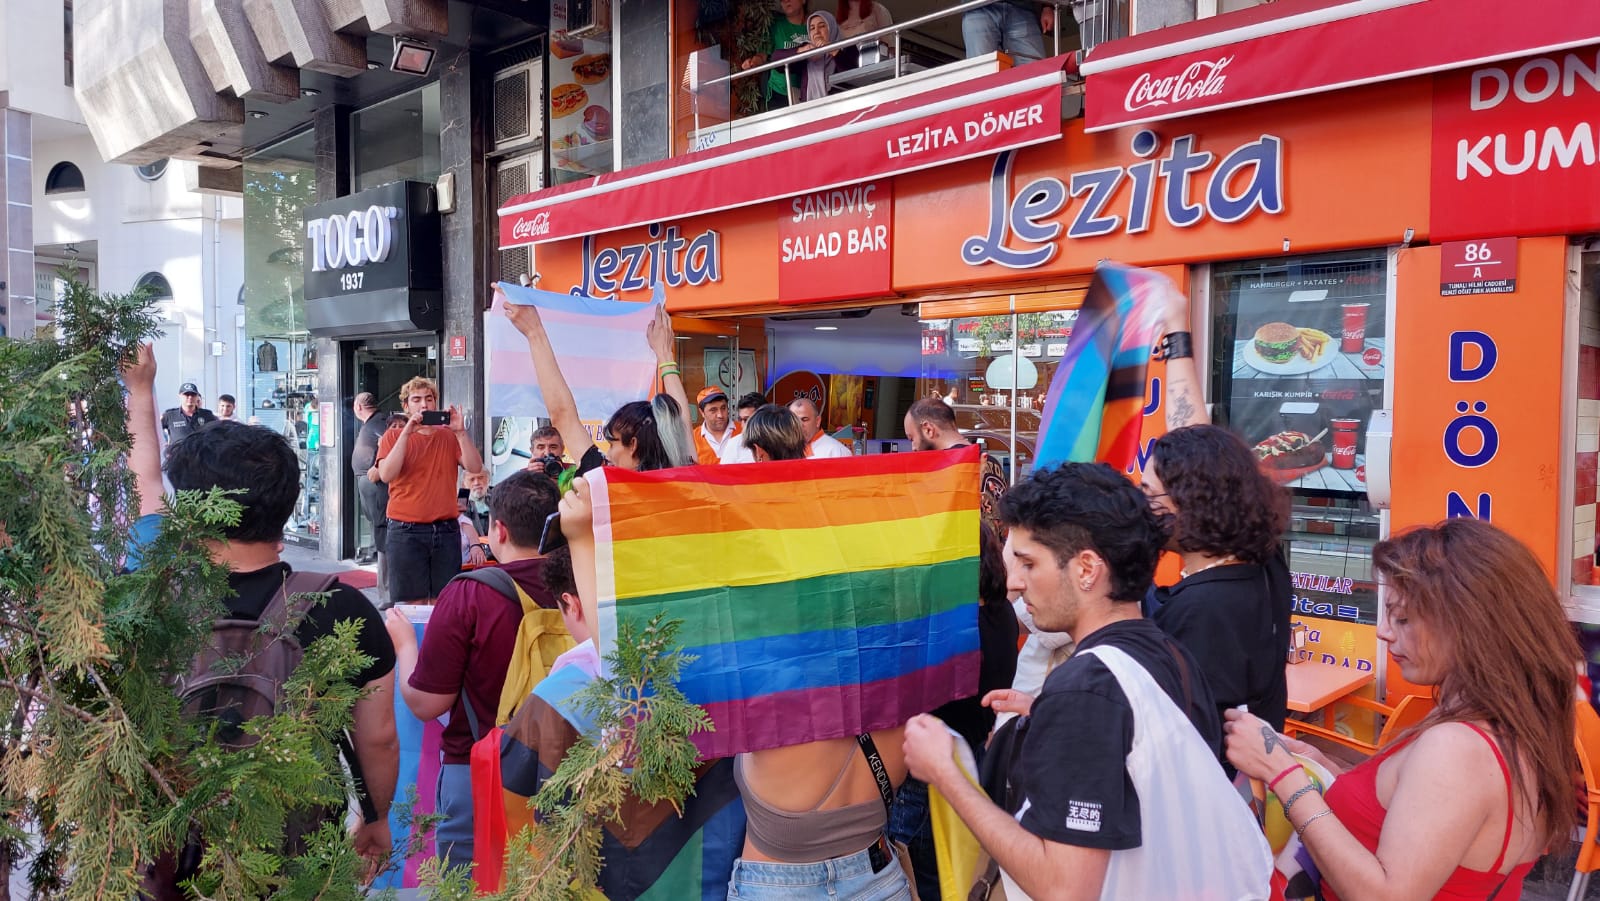 Ankara Onur Yürüyüşü’nde şiddet gören gazeteciler: İktidar her sene dozunu arttırdığı bir savaş ilan etti | Kaos GL - LGBTİ+ Haber Portalı Haber